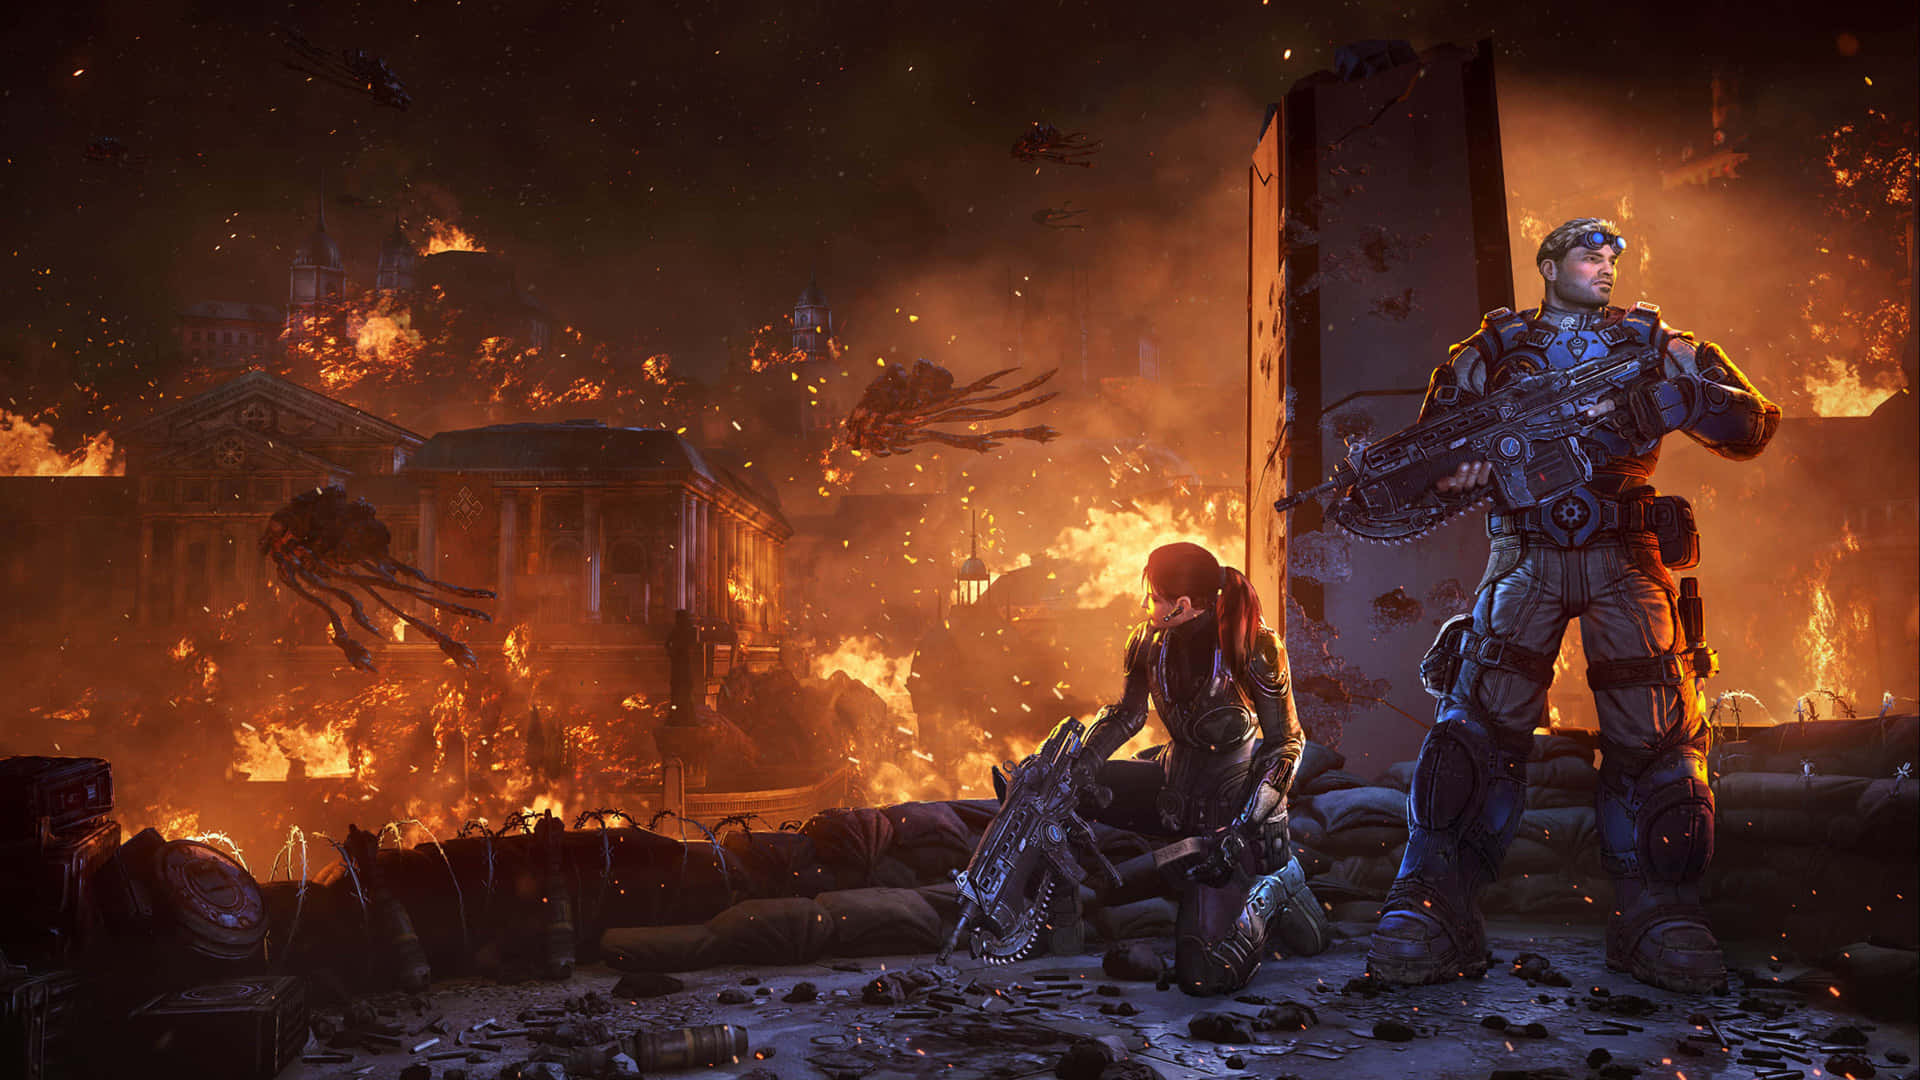 Denursprungliga Gears Of War, Som Banade Vägen För Andra Xbox-titlar. Wallpaper